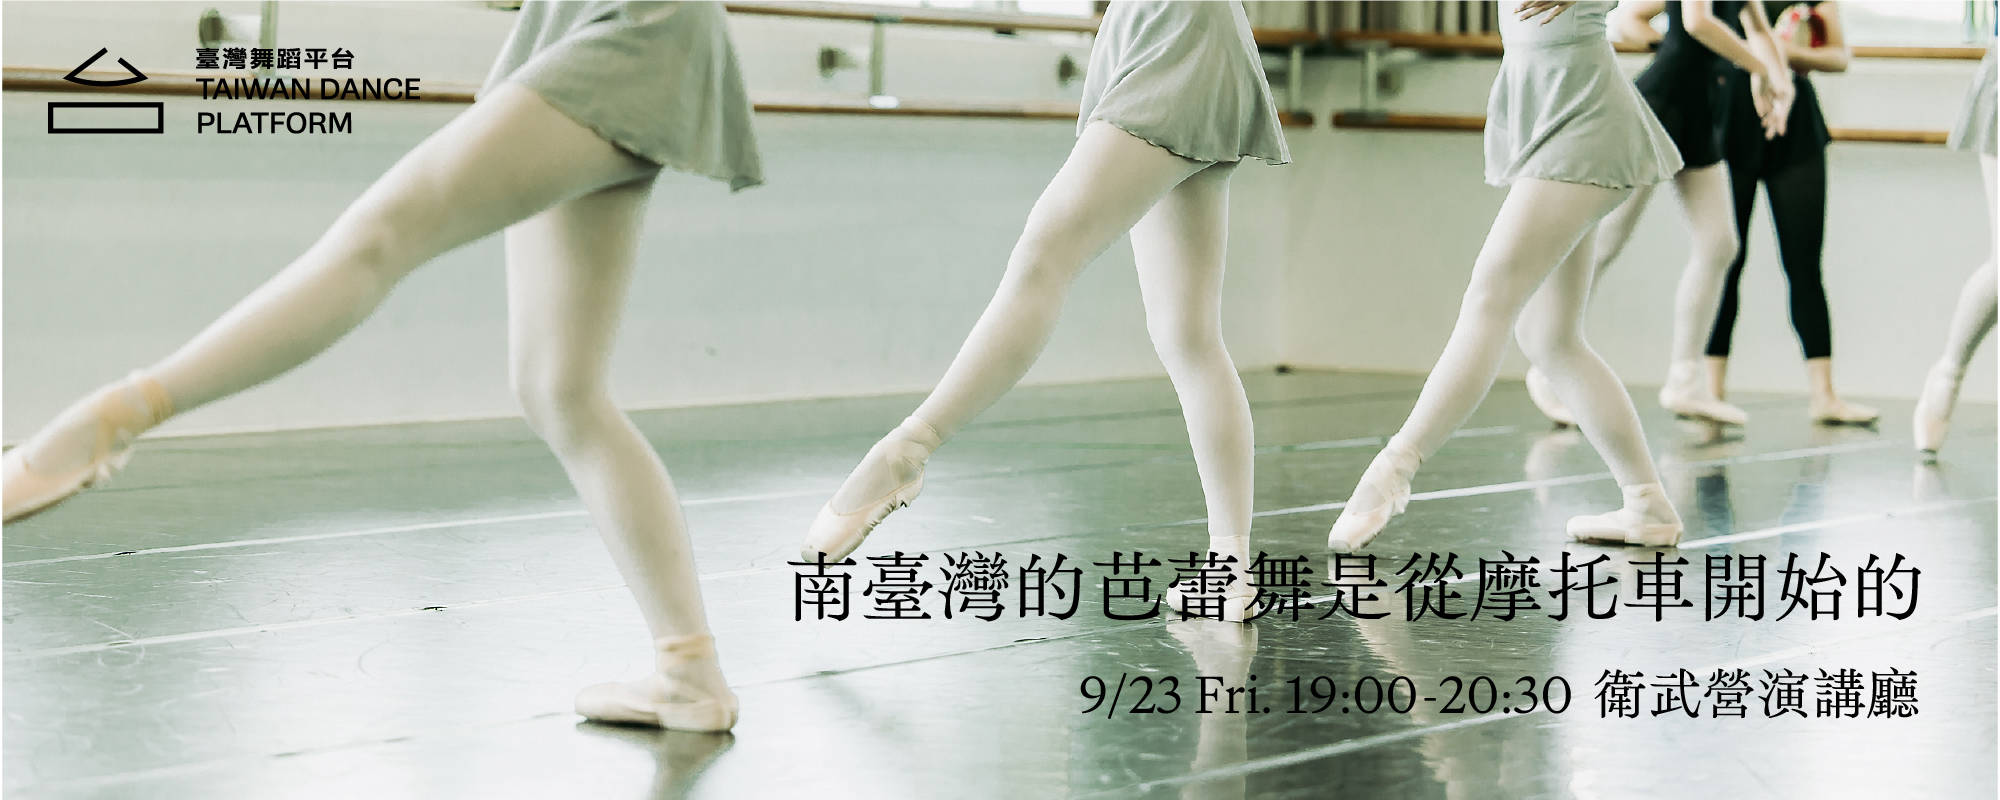 【2022臺灣舞蹈平台】 講座 | 南臺灣的芭蕾舞是從摩托⾞開始的